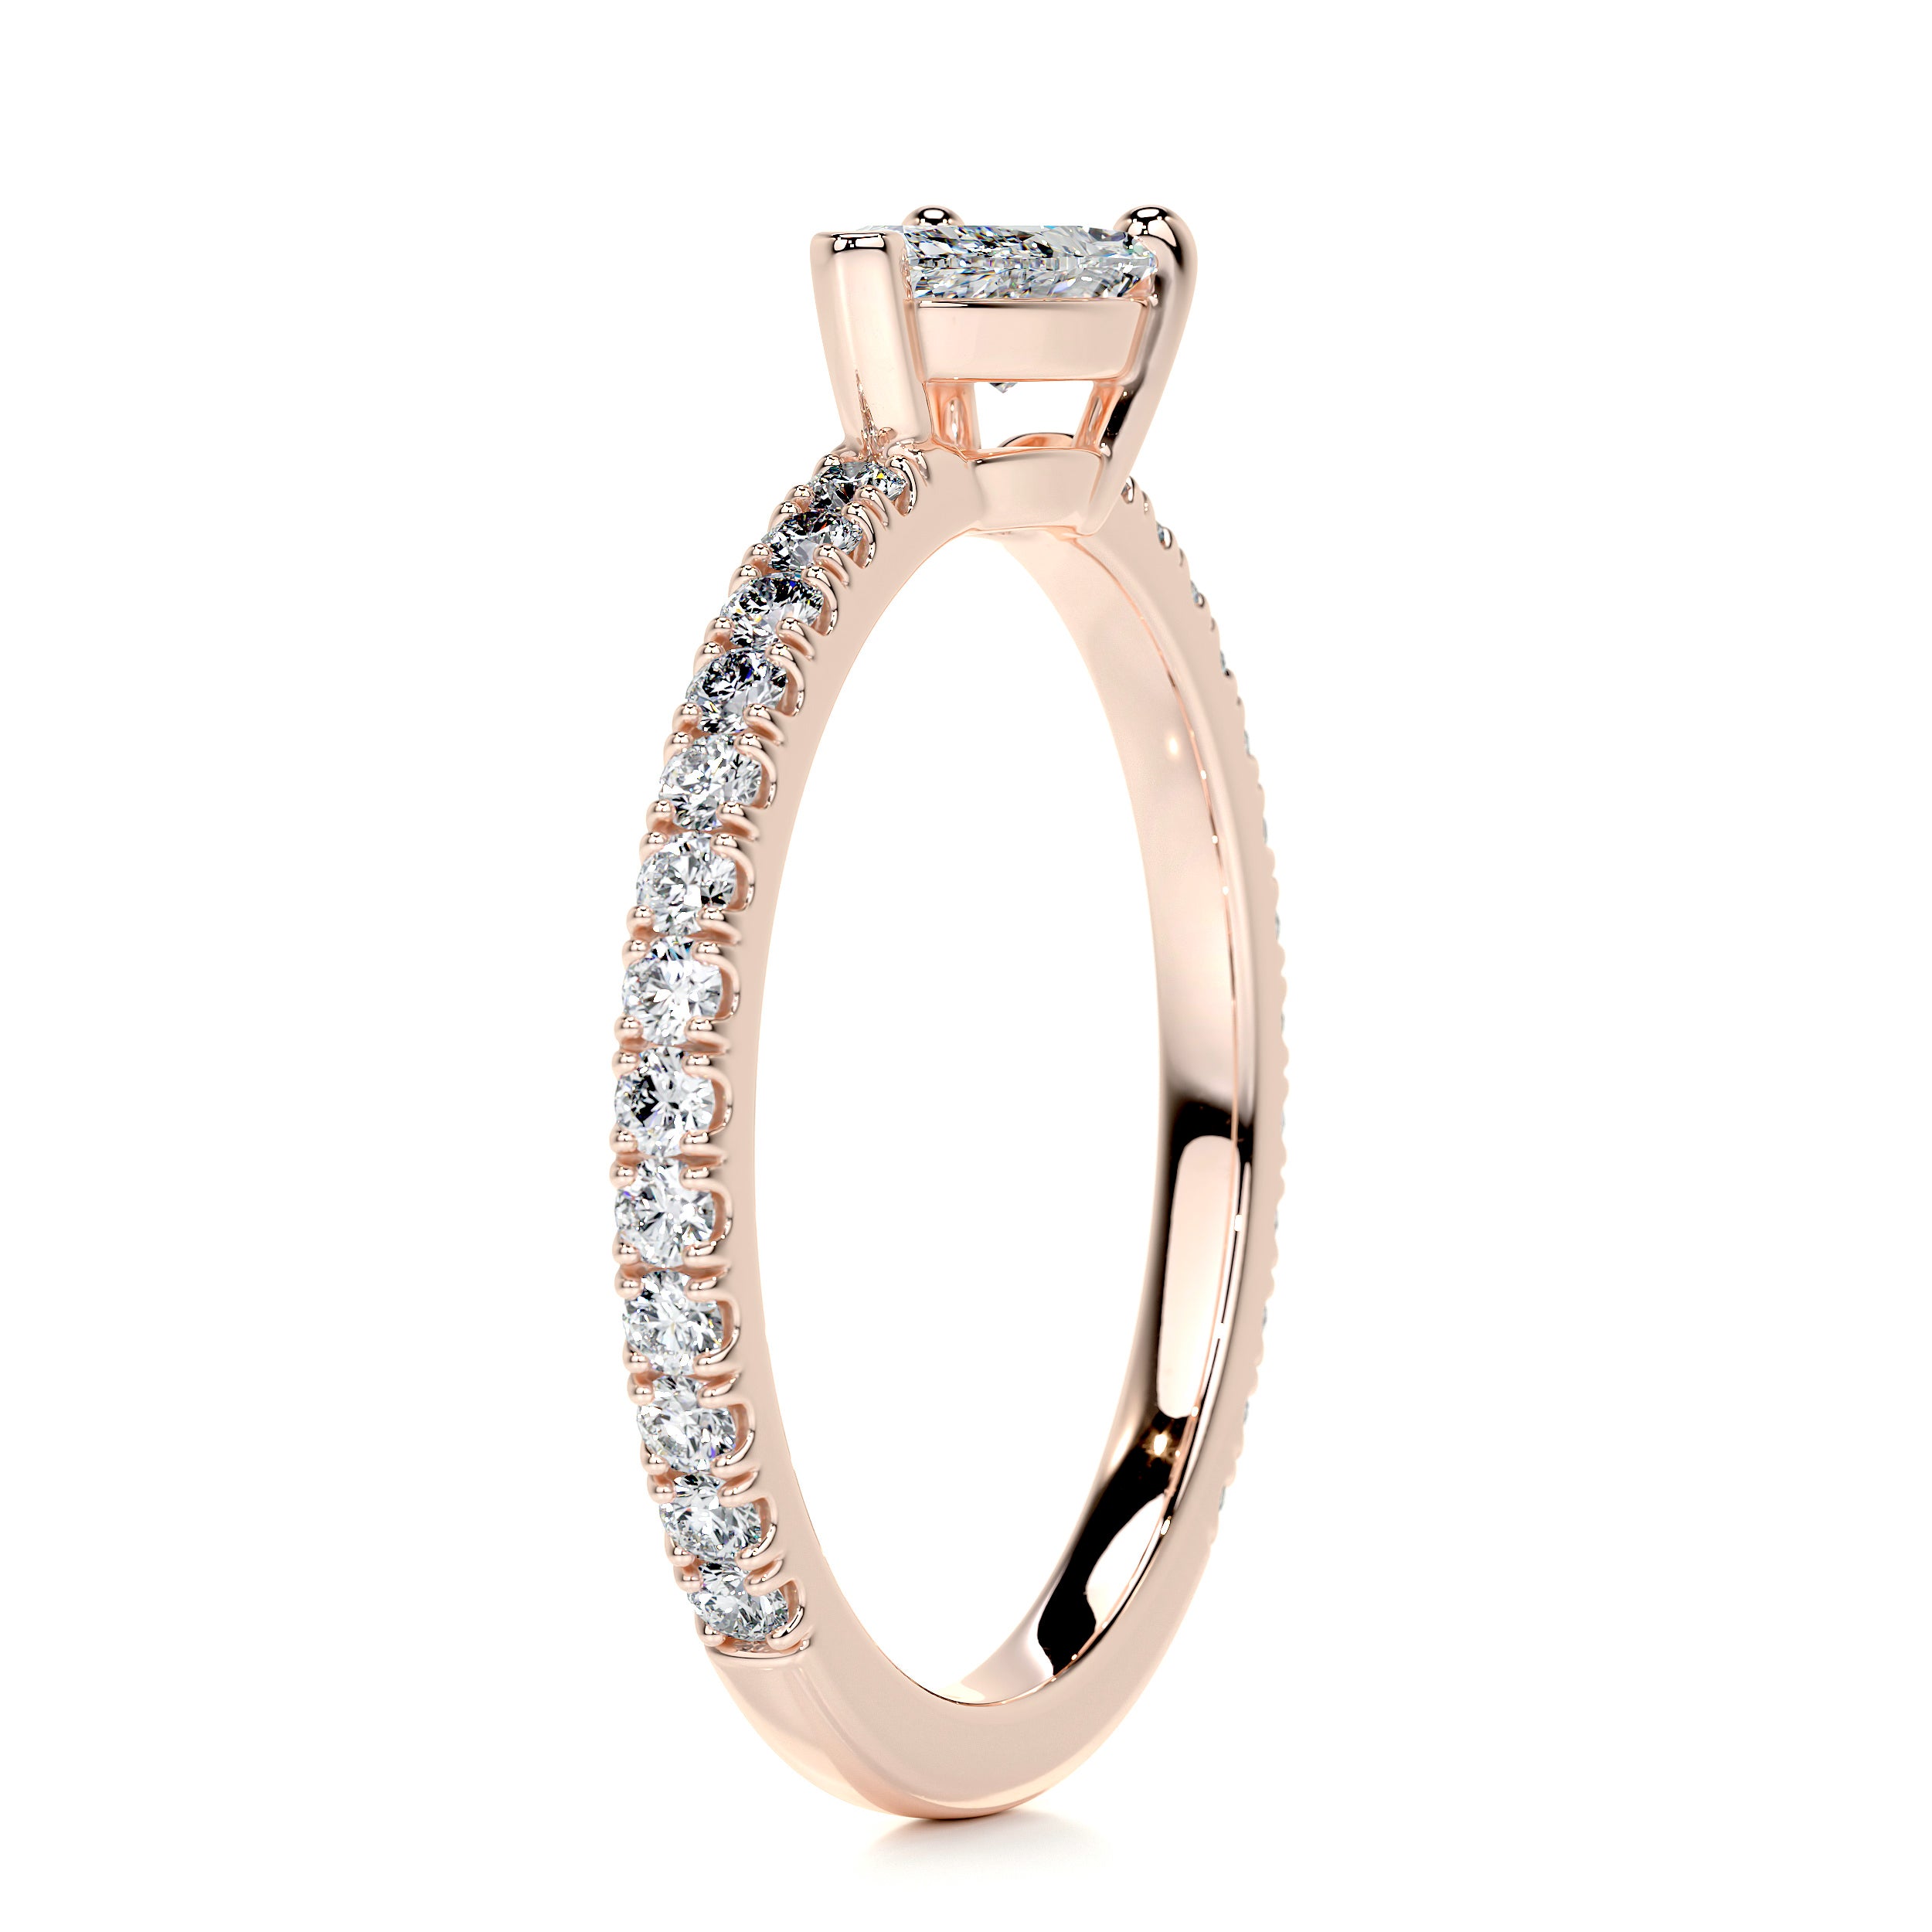 Chloe Pear Stacking Ring   (0.75 Carat) -14K Rose Gold